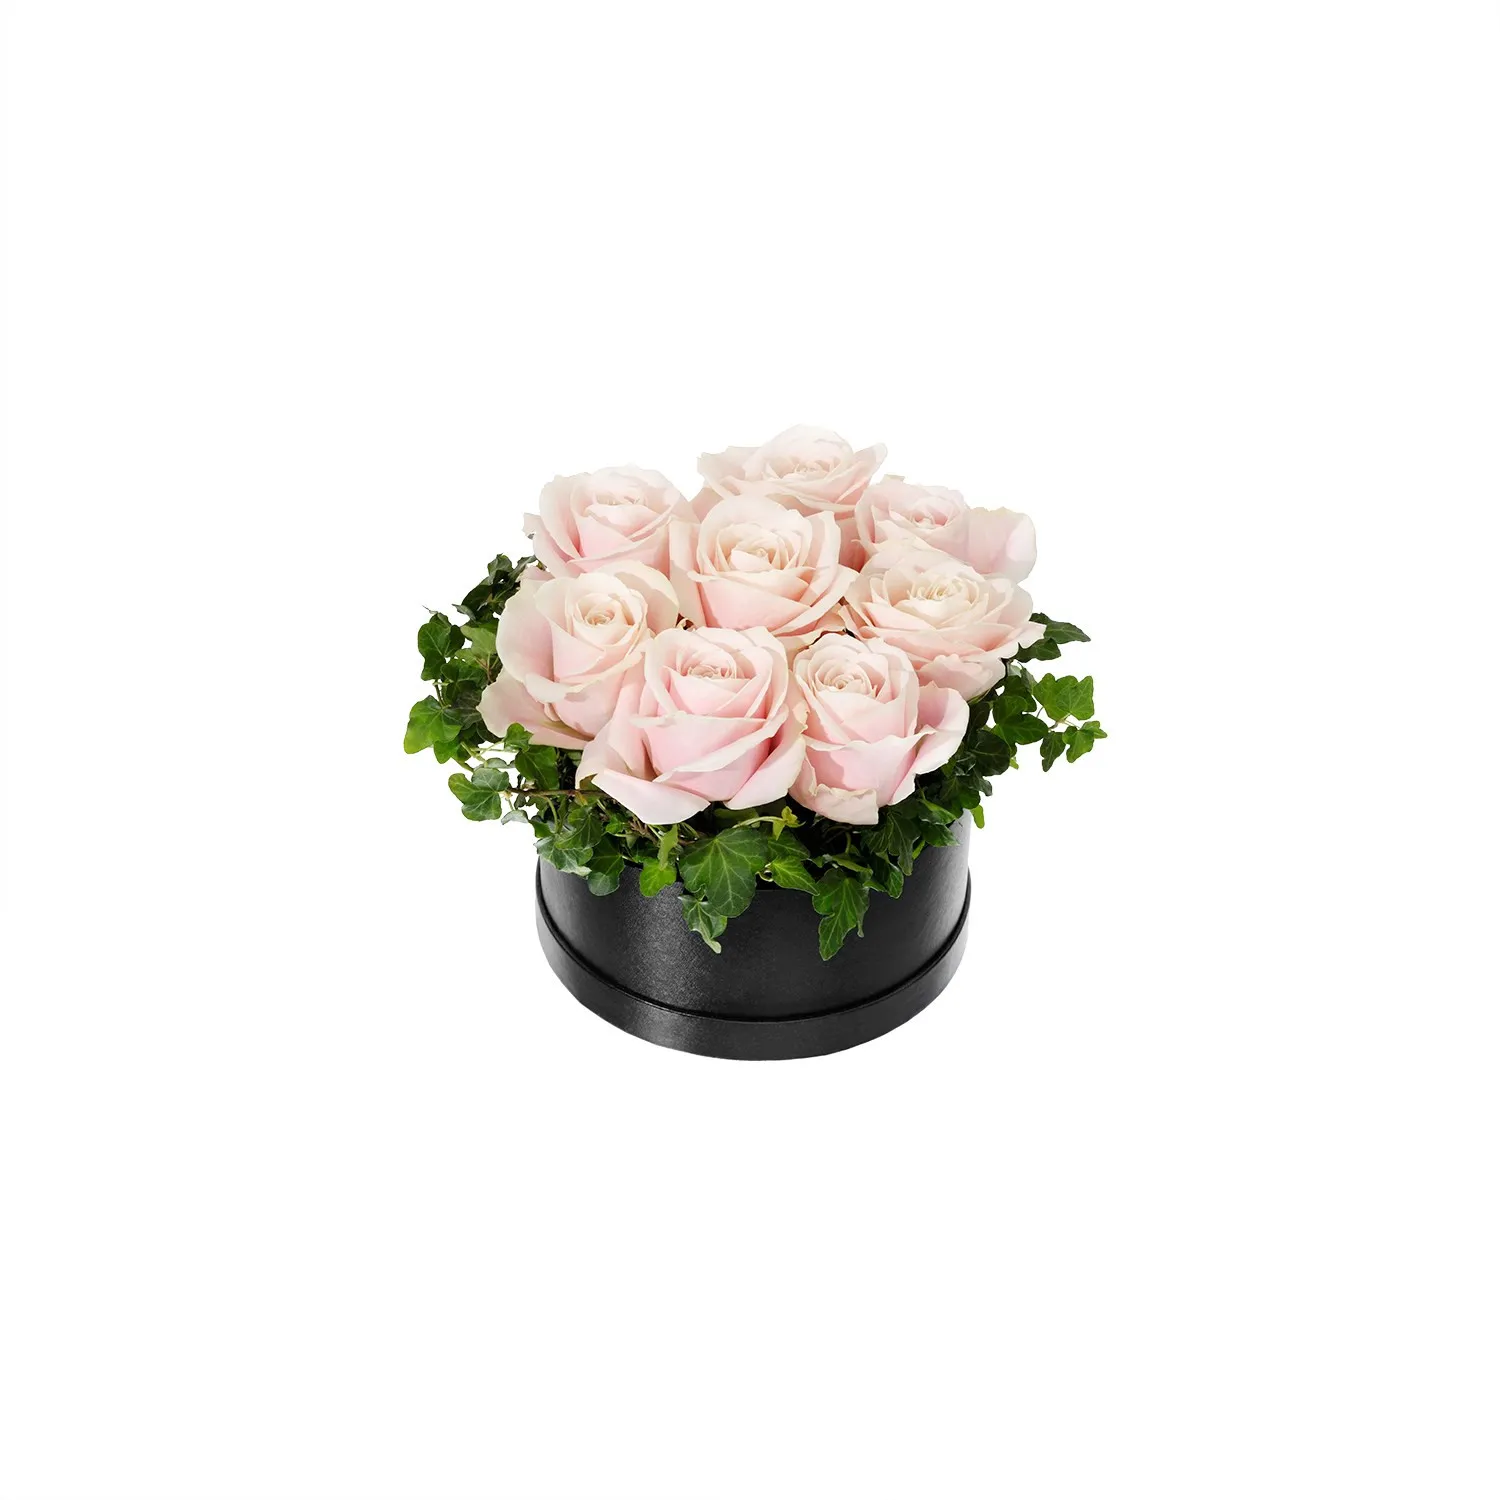 Large Flower Box, Pink Roses - Sweden